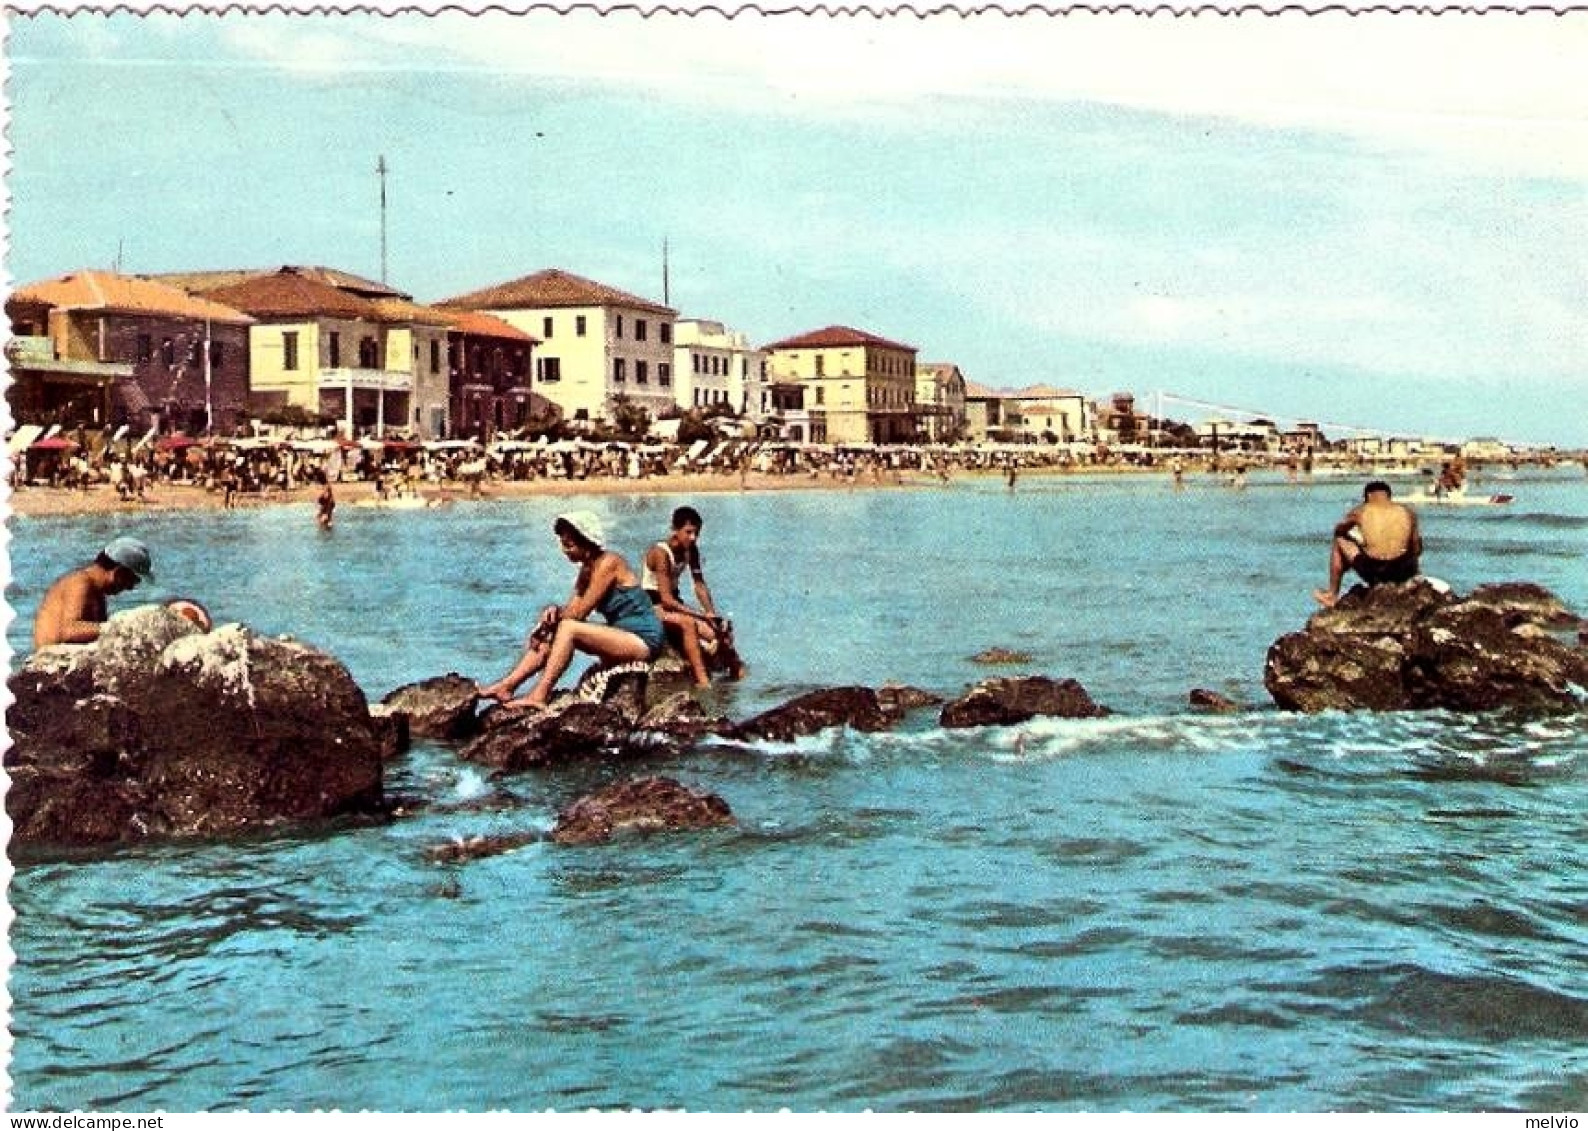 1959-cartolina Viserba Rimini Alberghi Visti Dal Mare, Diretta In Svizzera Affra - Rimini